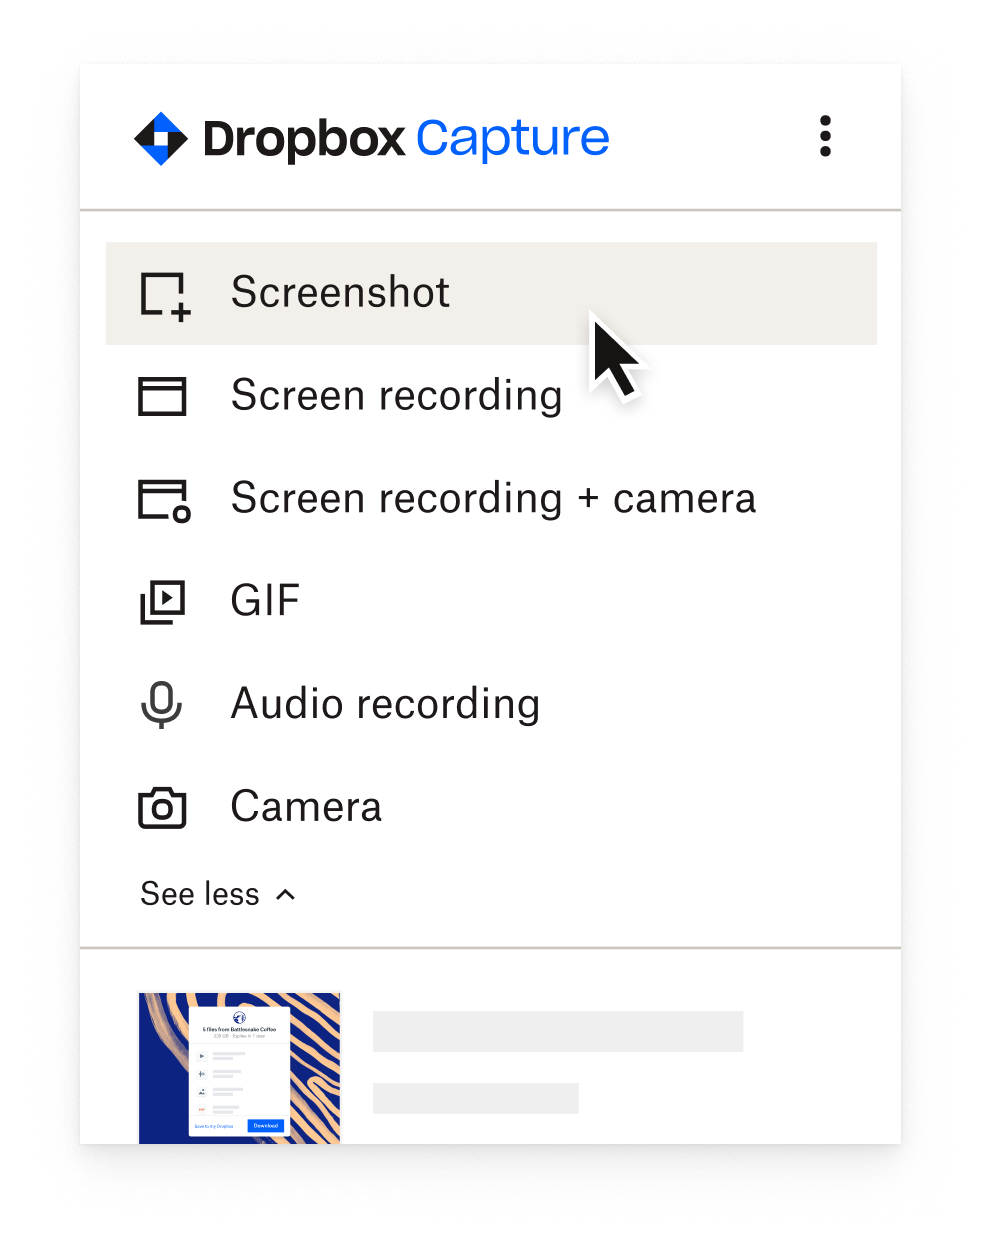 User selecting “screenshot” in the Capture menu